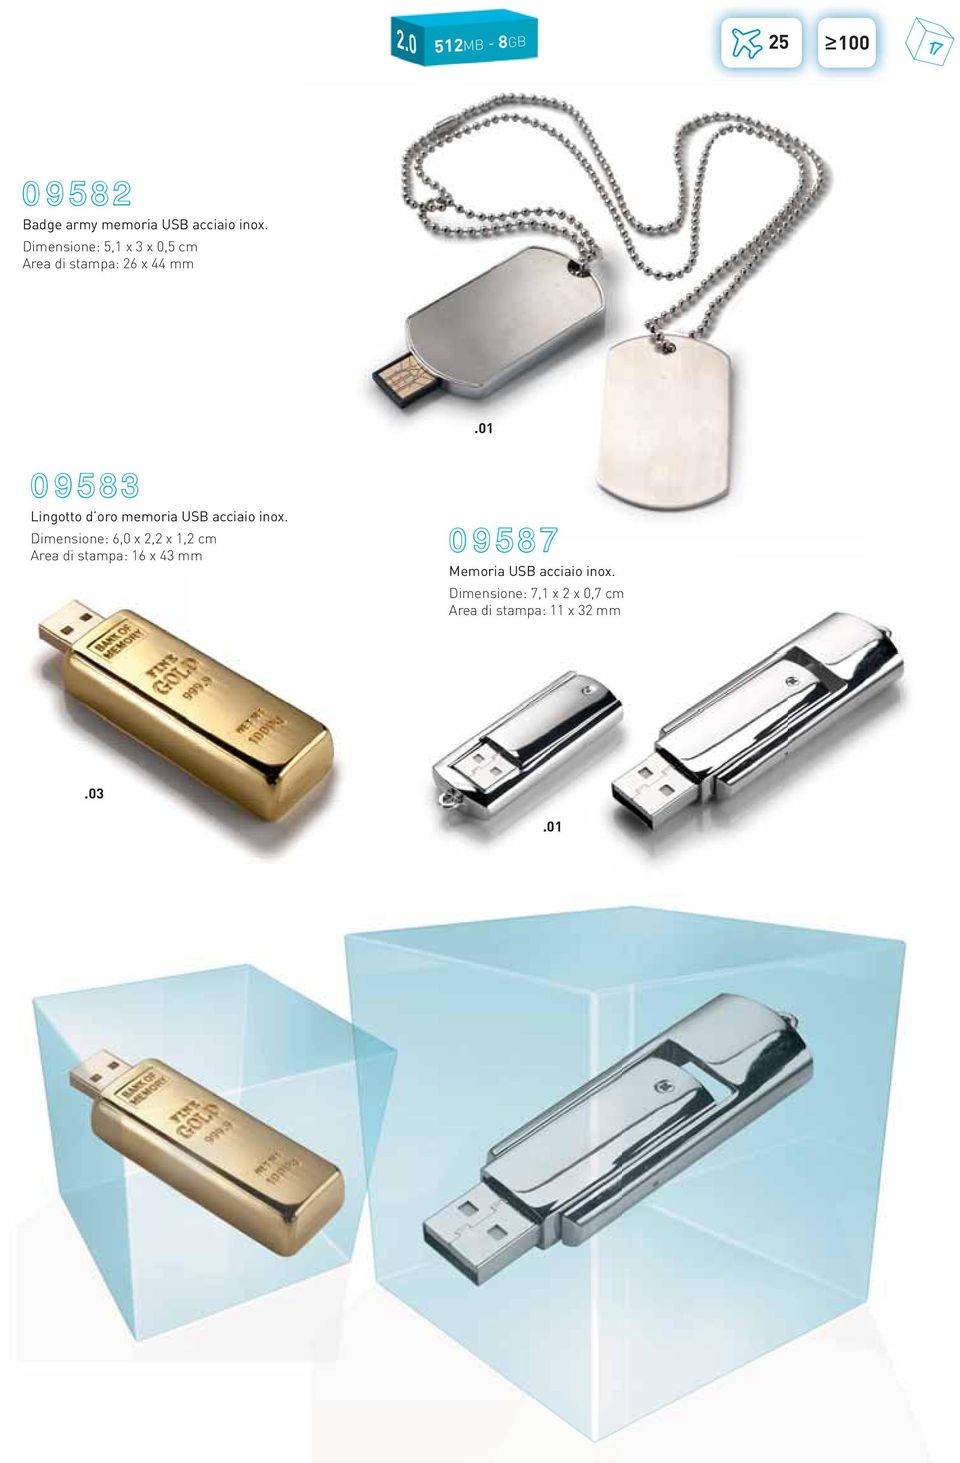 oro memoria USB acciaio inox.